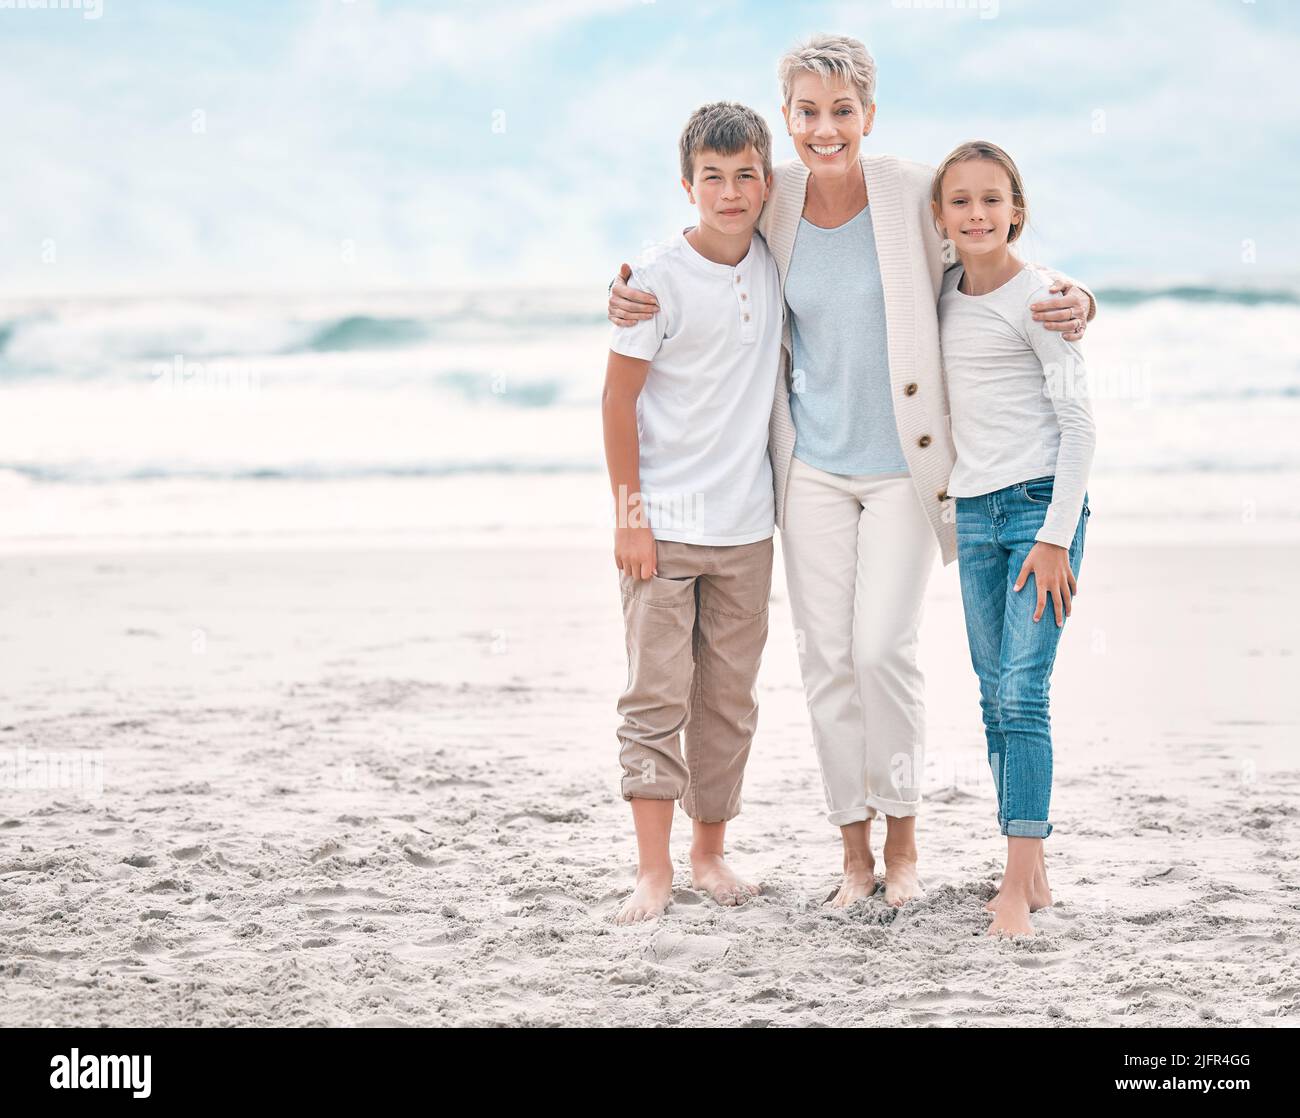 L'illuminazione fa l'immagine. Scatto di una donna matura e dei suoi nipoti che si legano alla spiaggia. Foto Stock